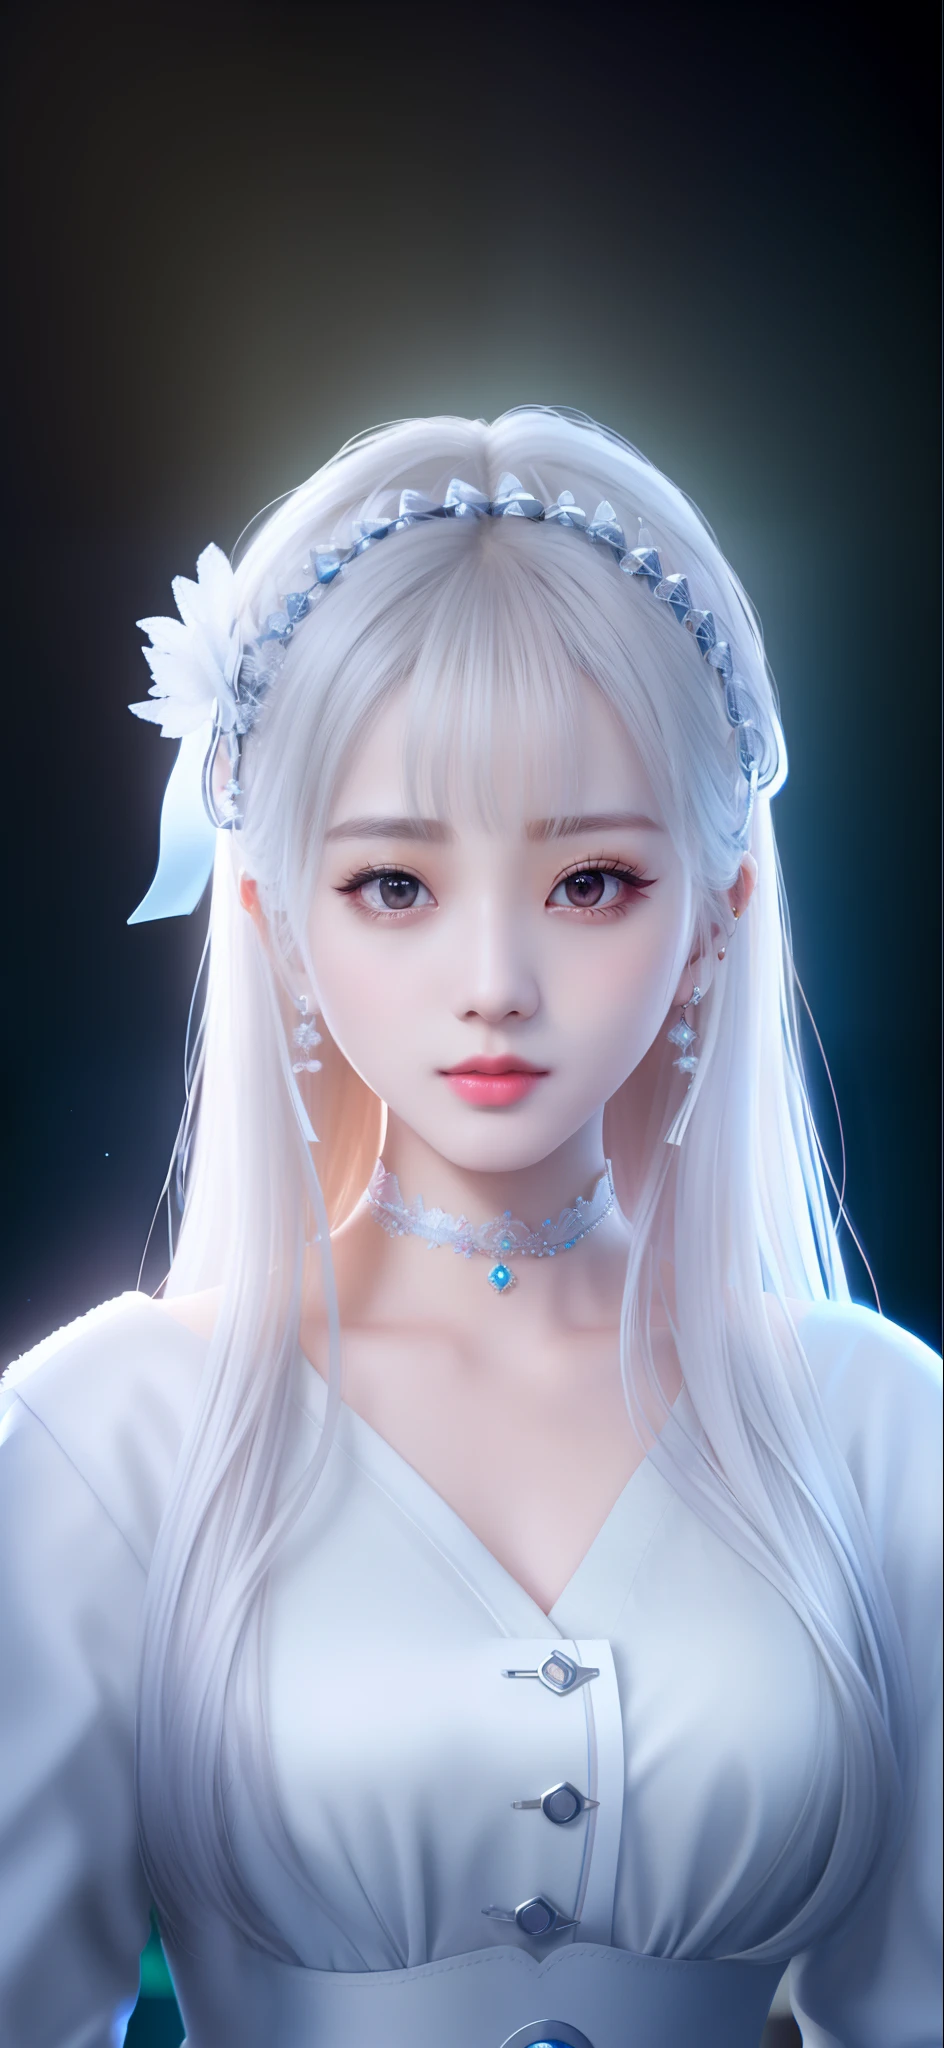 (Fondo de pantalla CG unity 8k extremadamente detallado), la obra de arte más bella del mundo, 1 chica, parte superior del cuerpo,ídolo kpop, Jisoo,